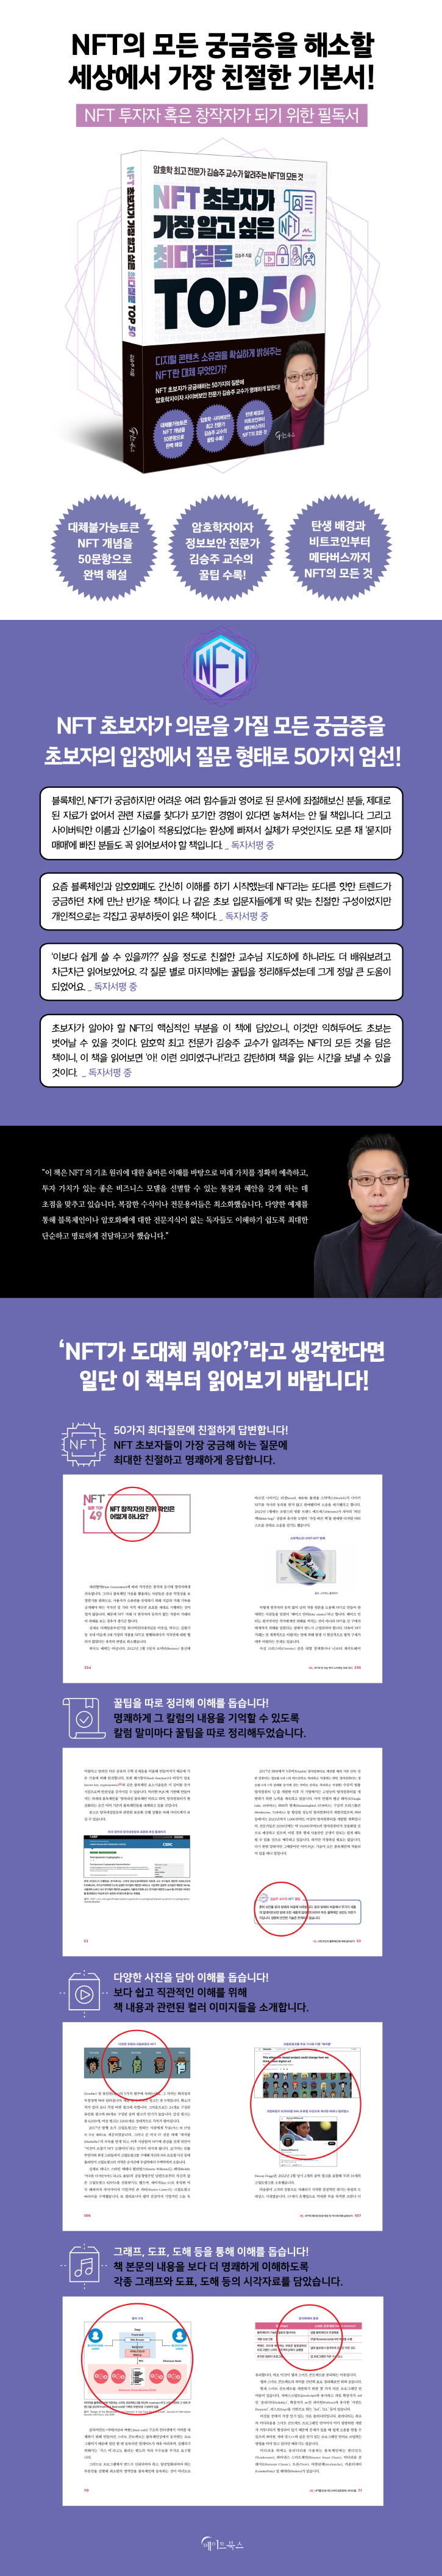 [크기변환]NFT 초보자가 가장 알고 싶은 최다질문 TOP 50 홍보페이지.jpg